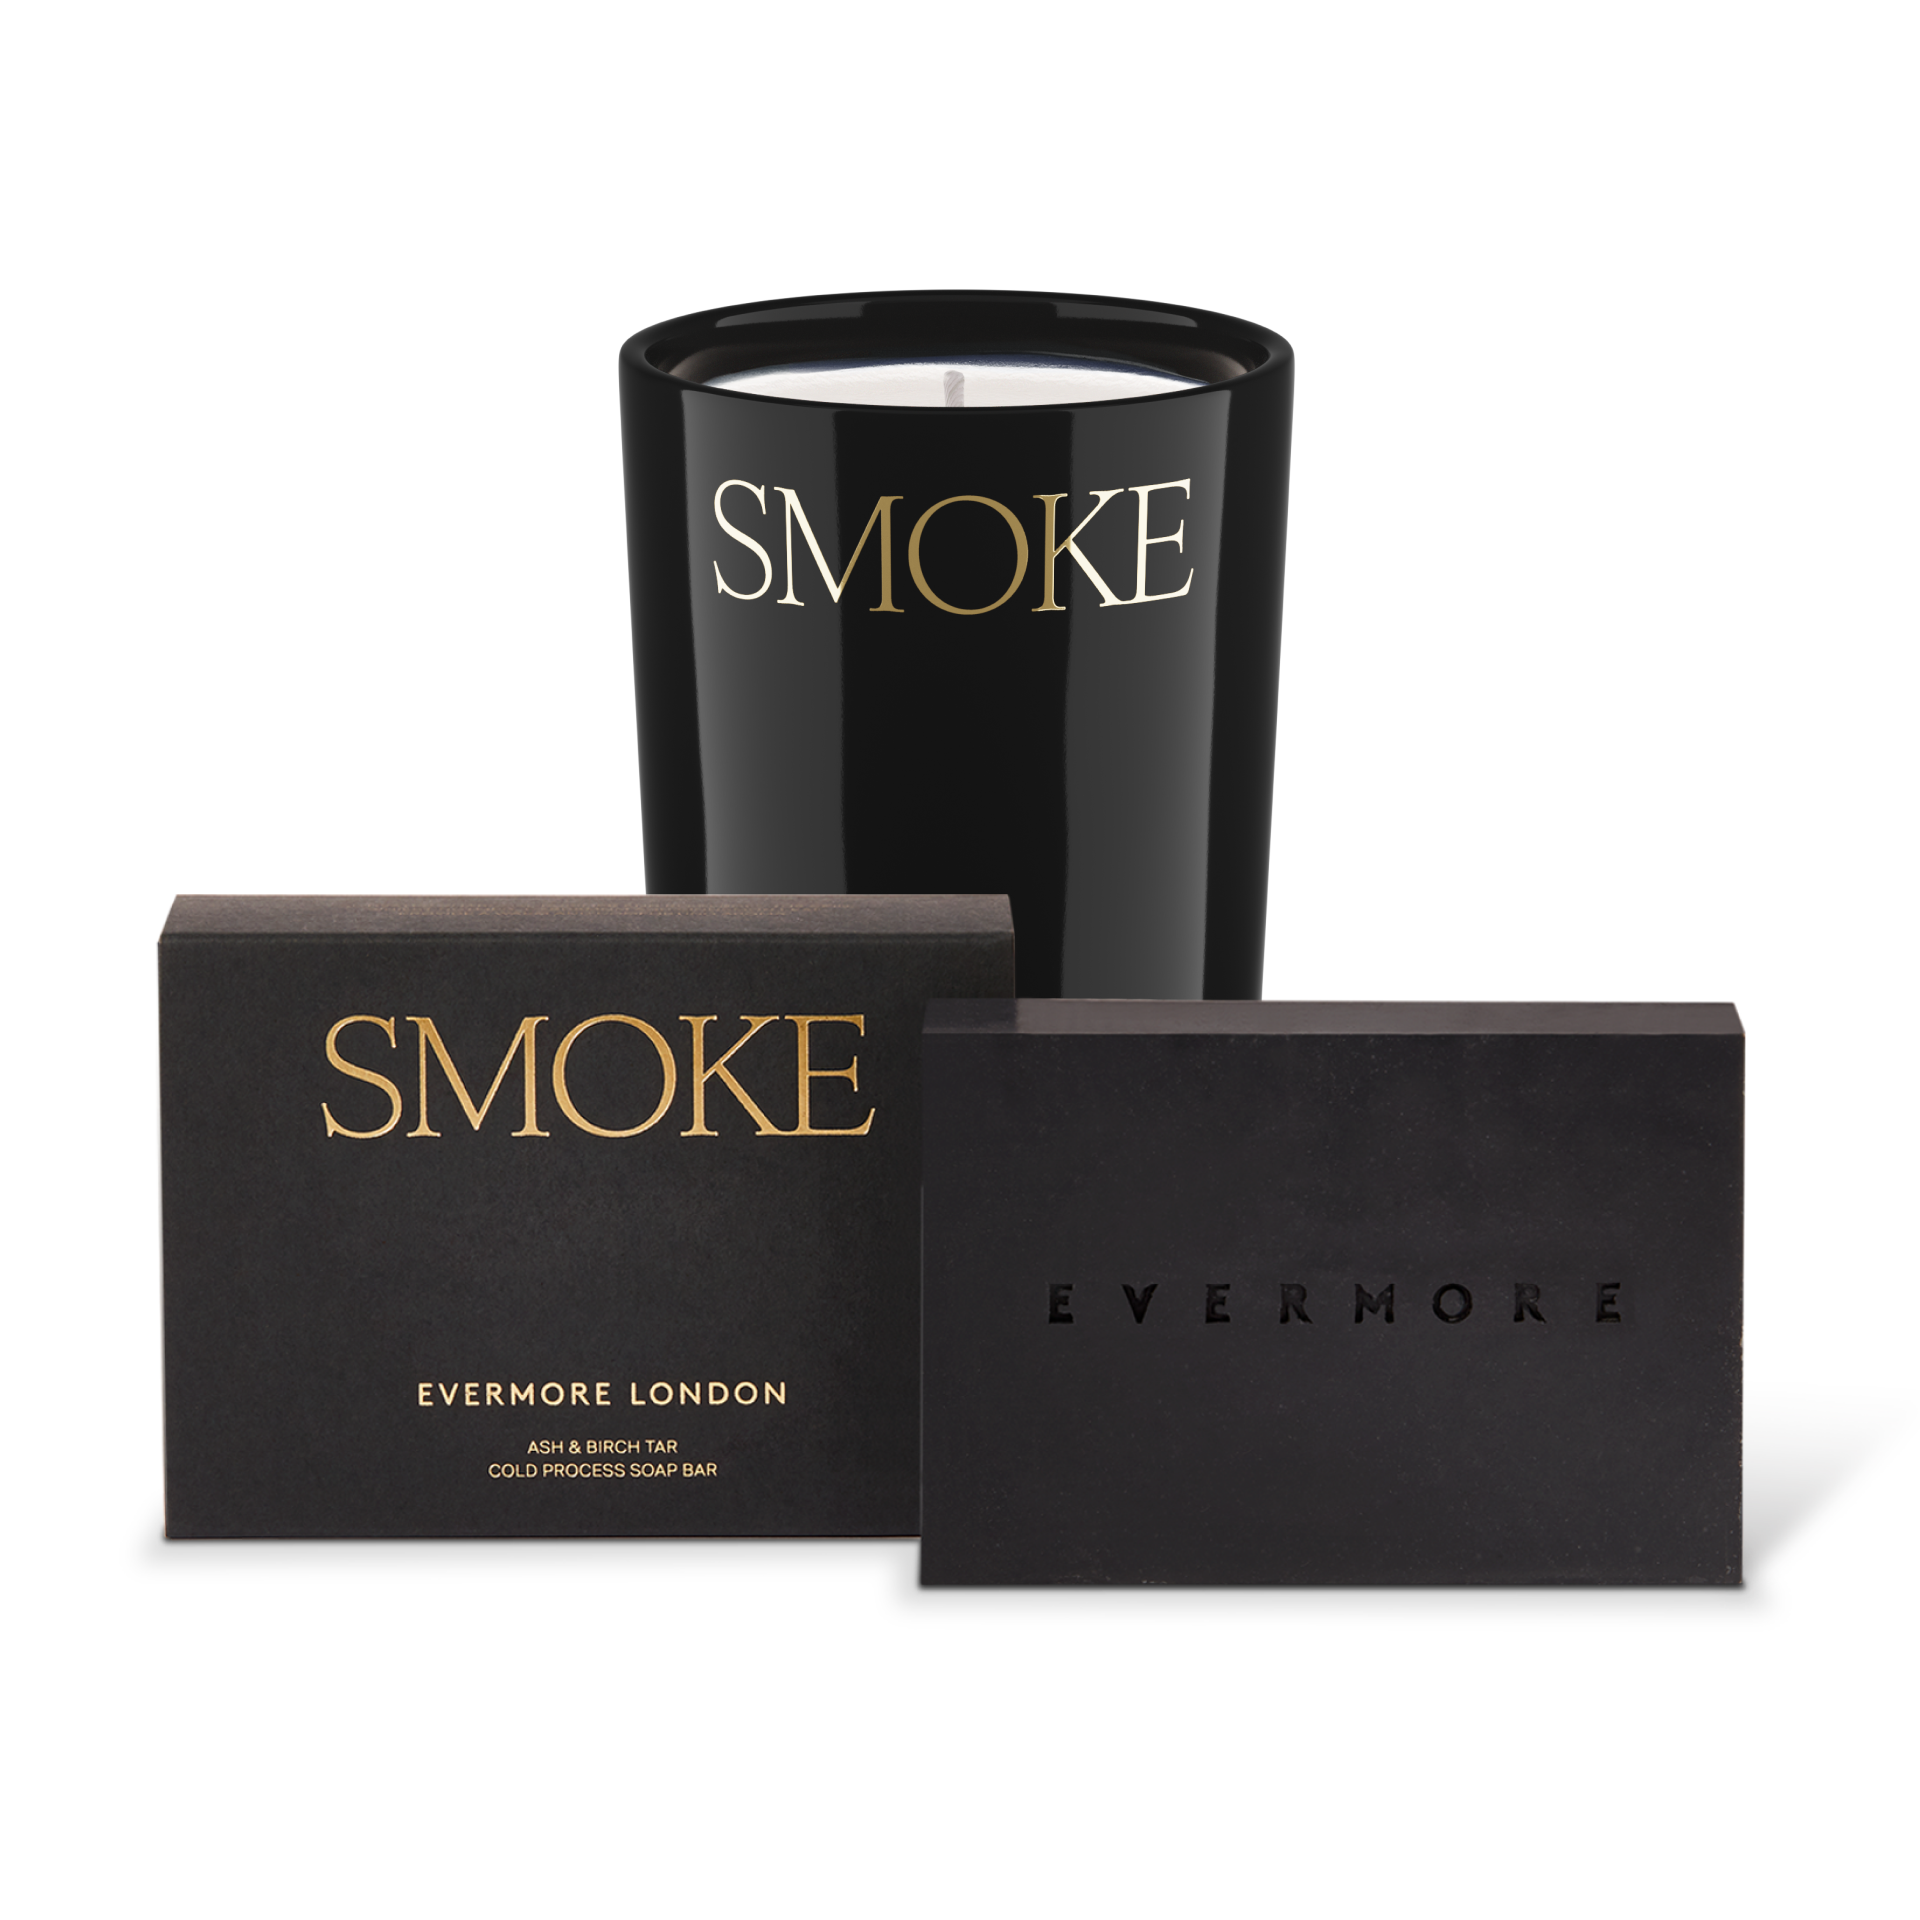 Evermore Smoke Bundle - save 20%